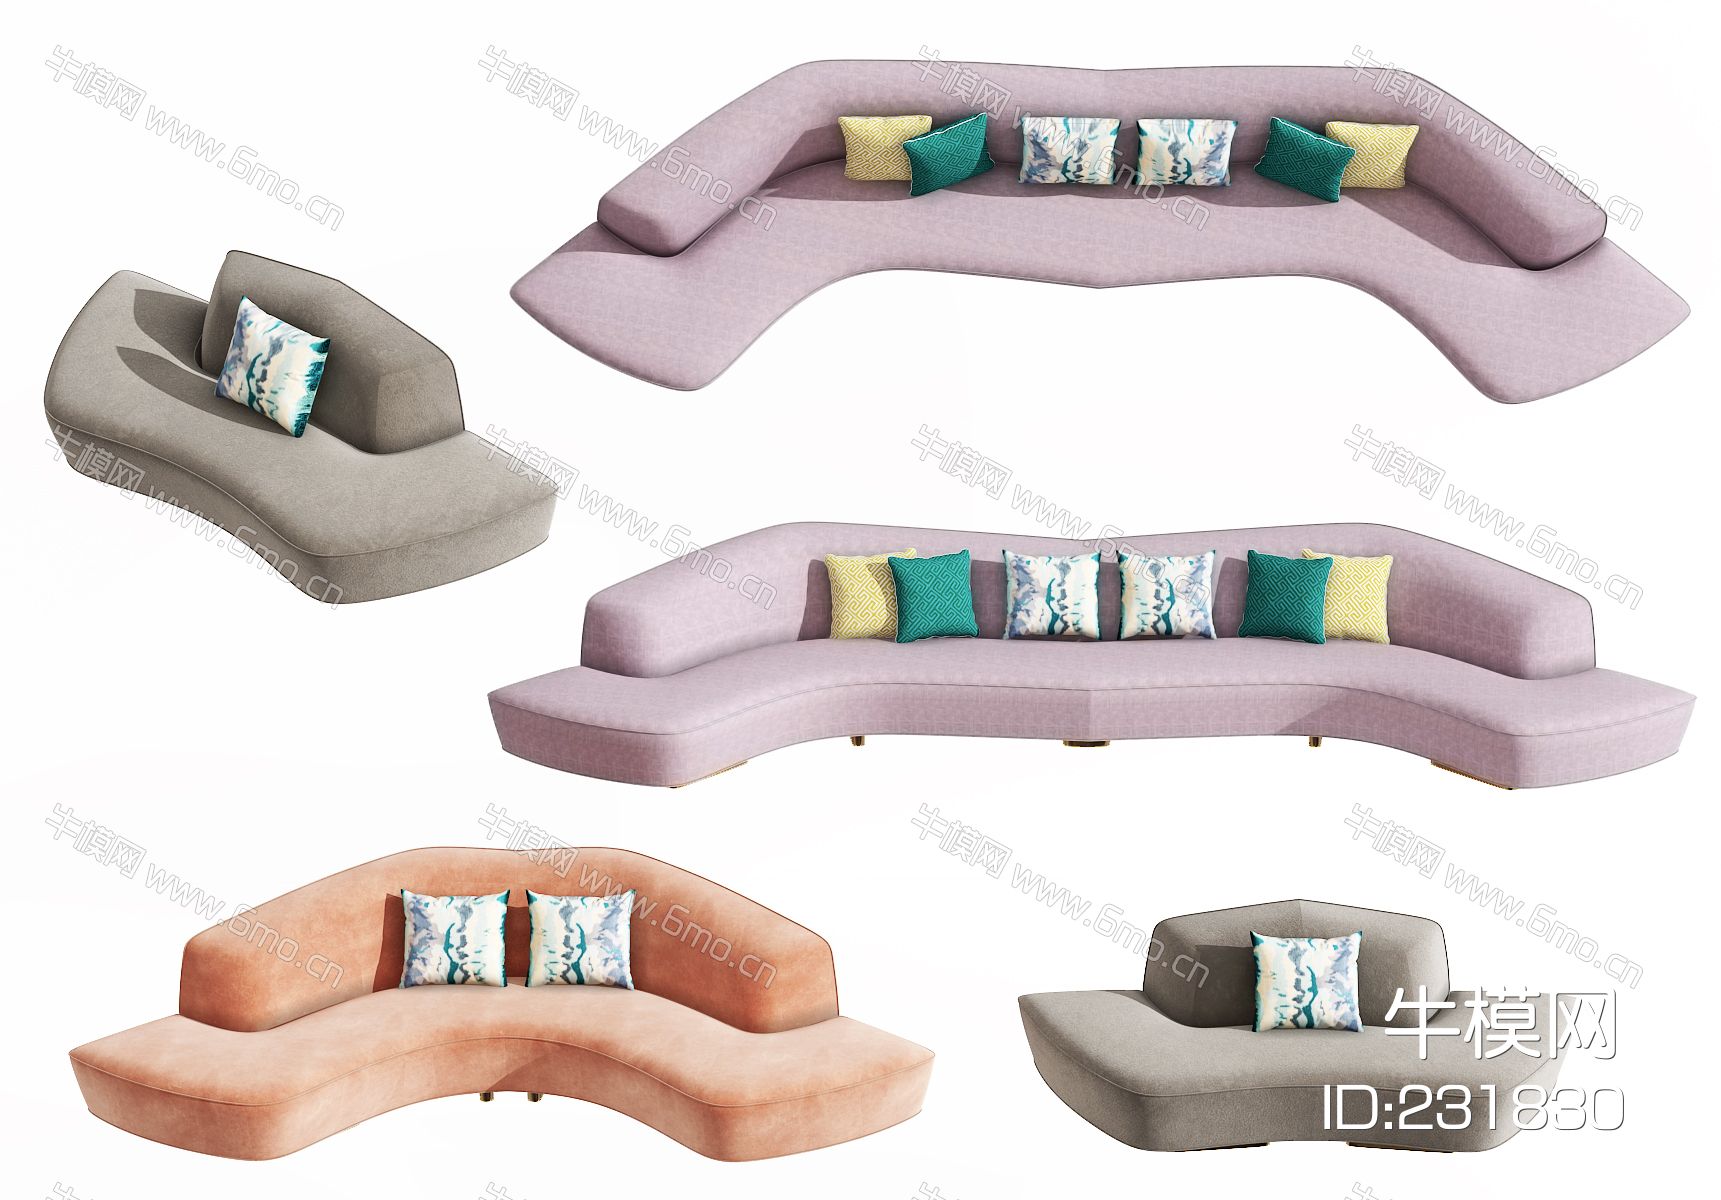 现代异形沙发，休闲沙发，休闲座椅，弧形沙发，拐角沙发，创意沙发，抱枕